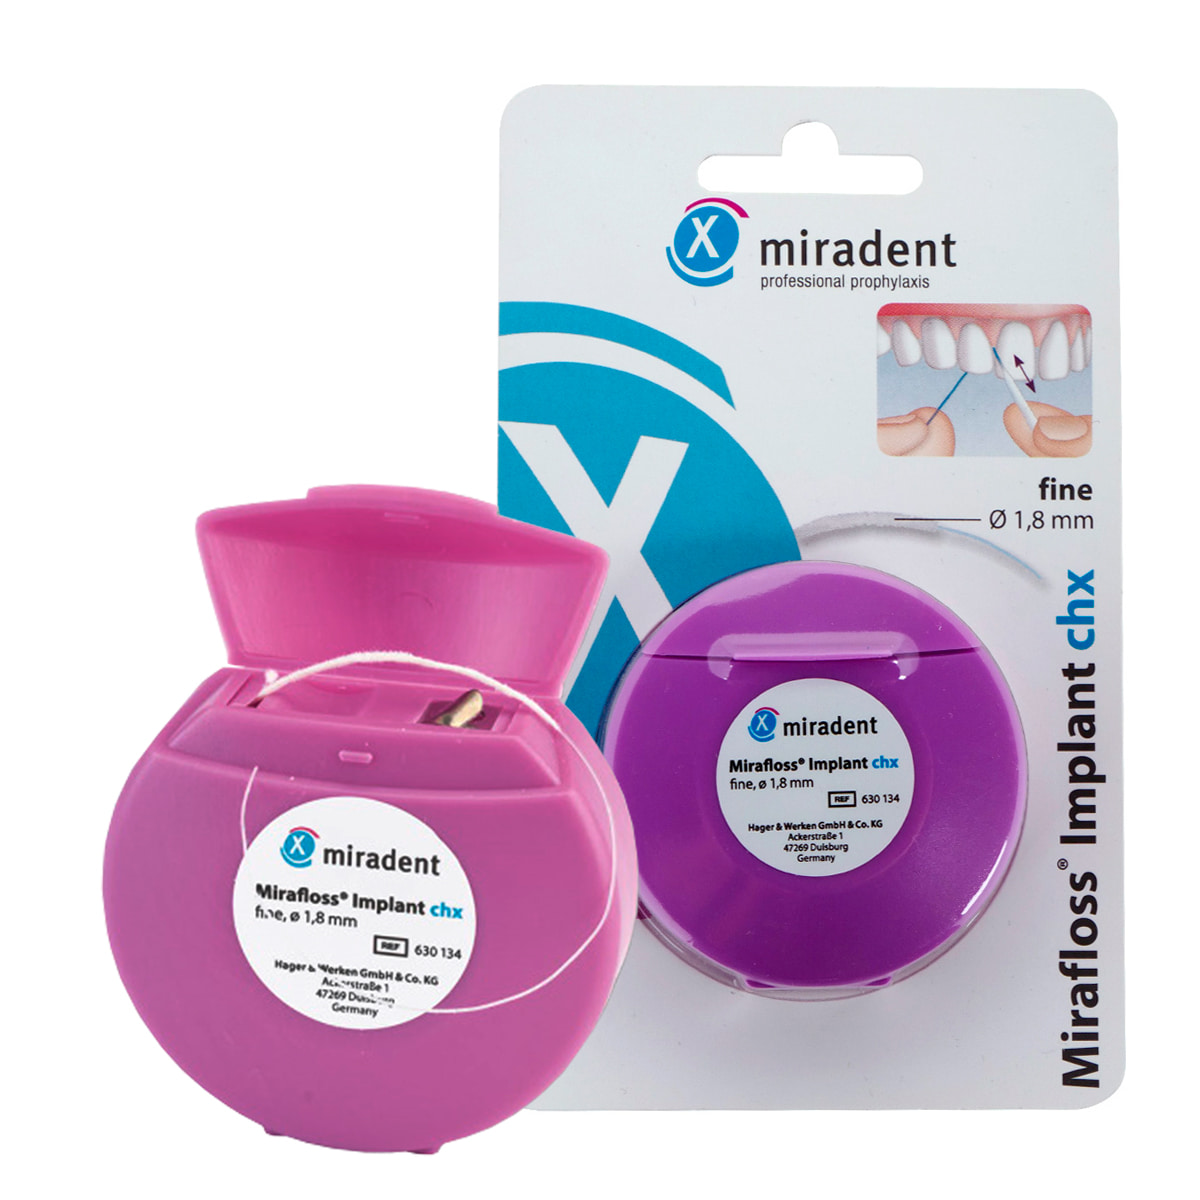 Зубная нить miradent Mirafloss Implant chx 1,8 мм для имплантов/брекетов нить miradent с хлоргексидином mirafloss implant chx fine 1 8 мм 50 шт по 15 см